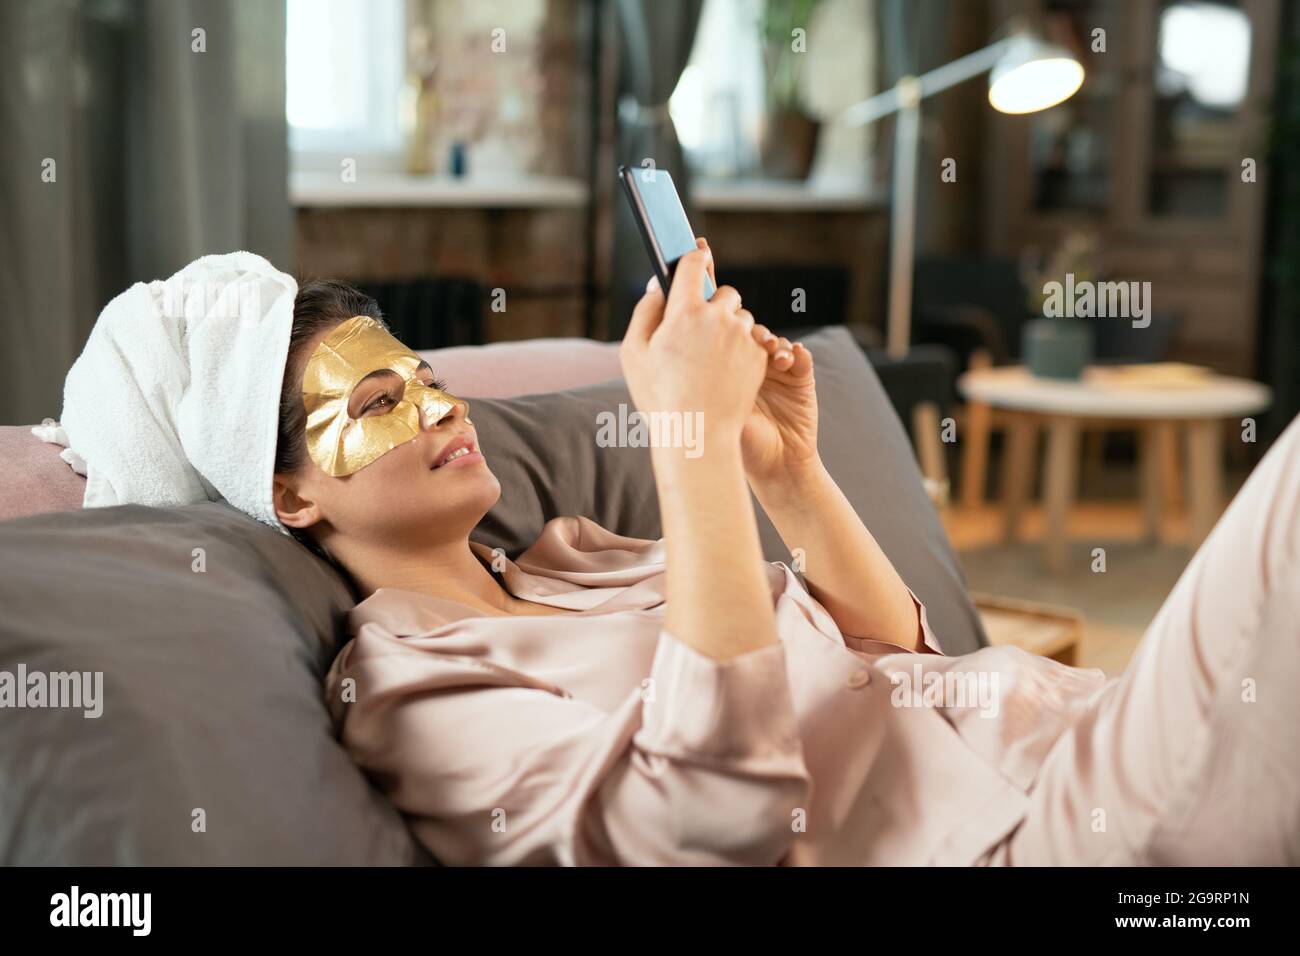 Junge schöne Frau in Seide Pyjamas, Handtuch auf dem Kopf und goldene kosmetische Maske auf Gesicht entspannen auf dem Bett und Selfie machen Stockfoto